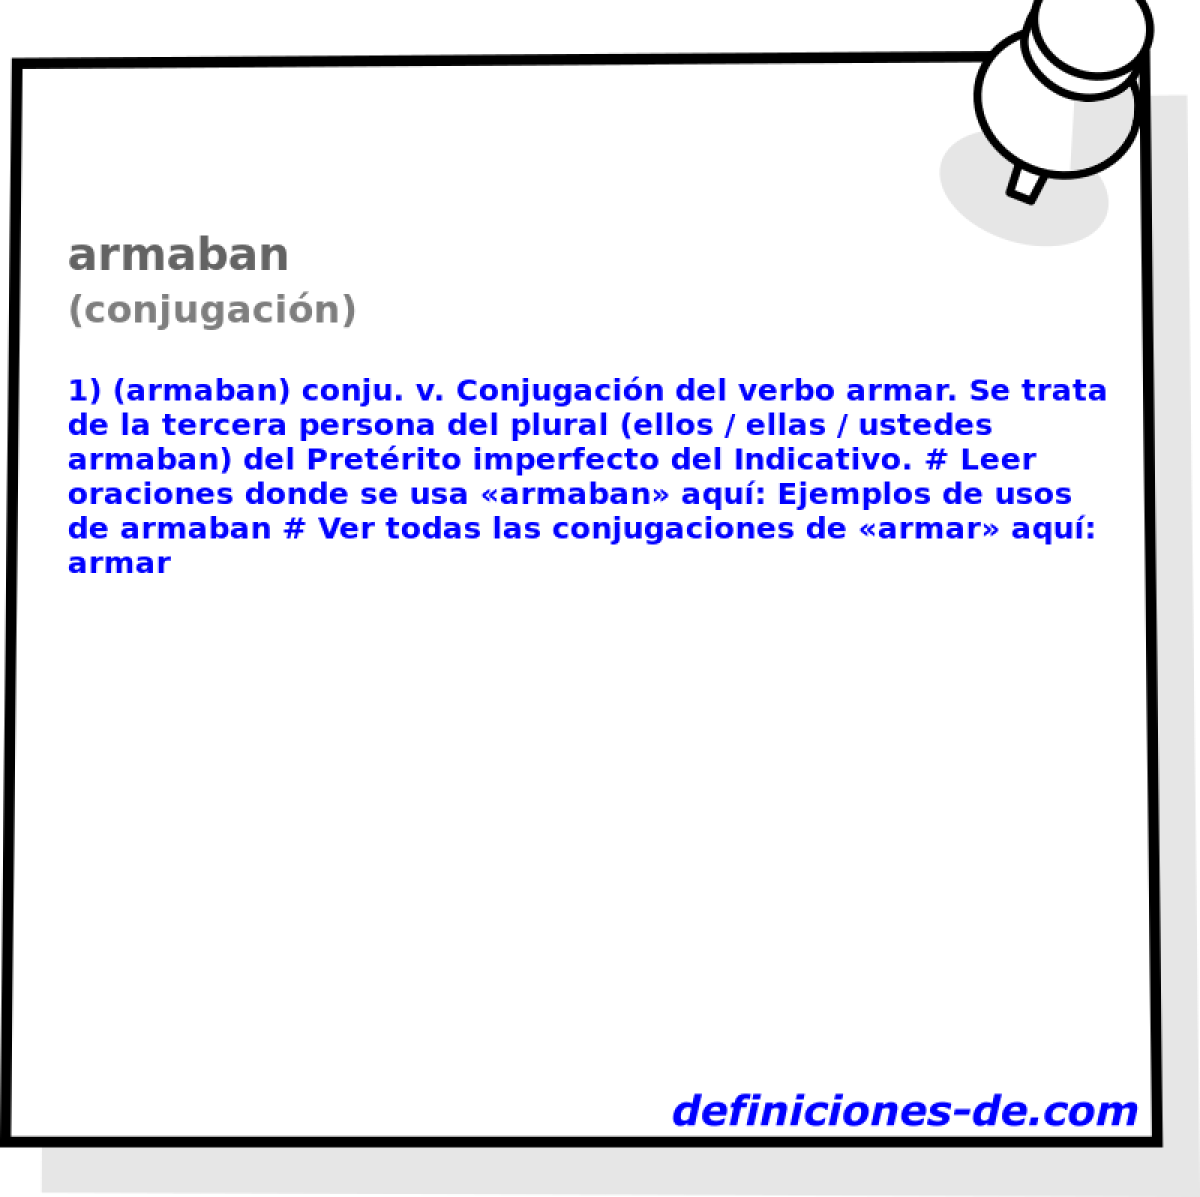 armaban (conjugacin)